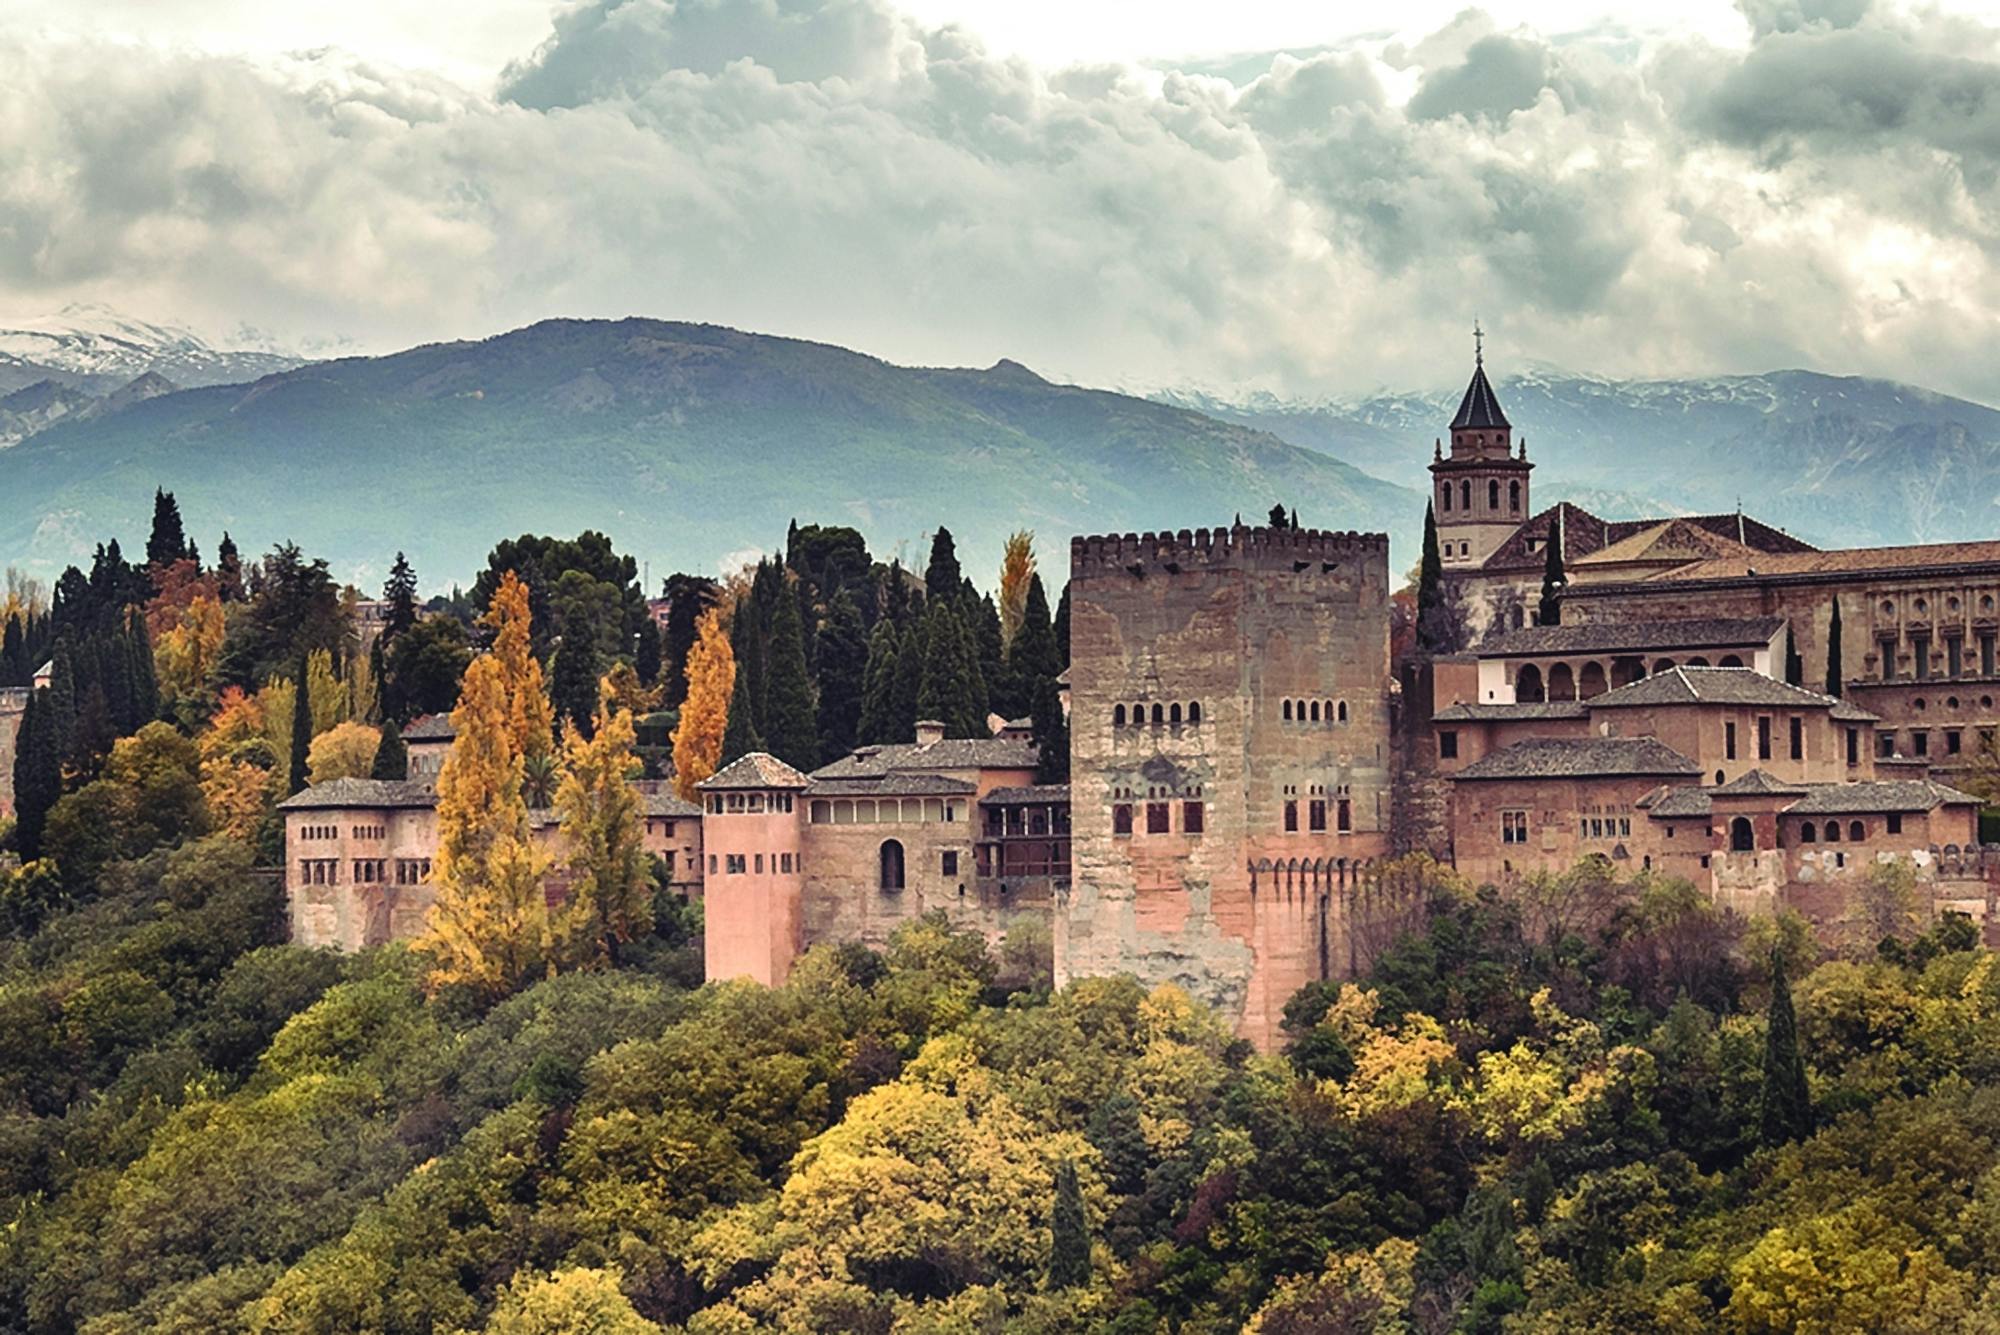 Excursão Alhambra e Palácios Nasrid saindo de Málaga